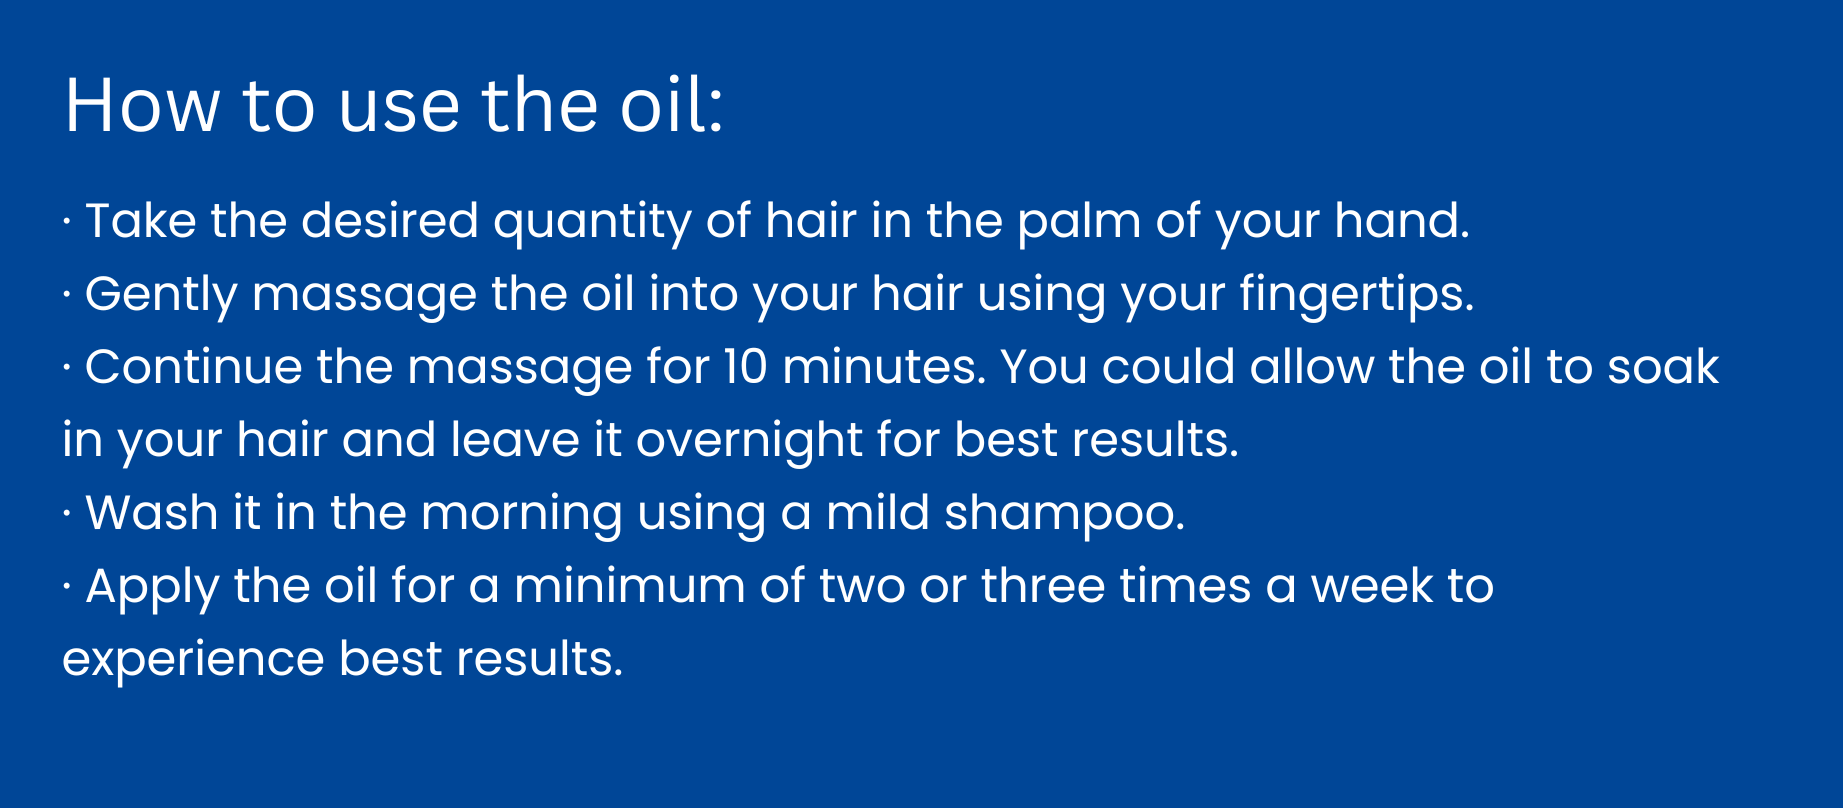 Cara menggunakan minyak rambut untuk hasil terbaik. 